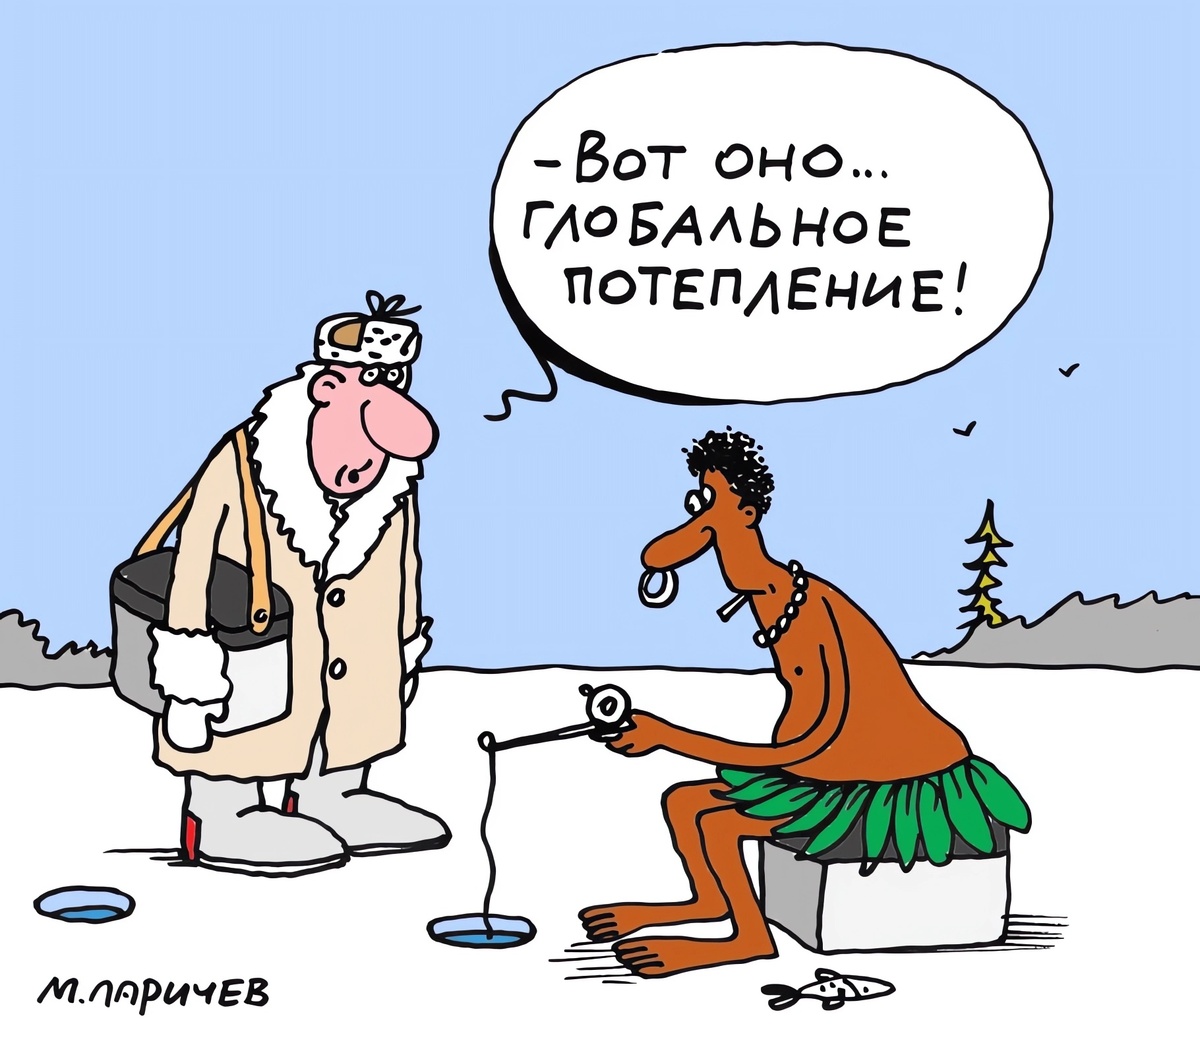 Питерского художника Михаила Ларичева можно смело назвать одним из самых антикризисных российских карикатуристов. Он, похоже, просто не умеет рисовать не смешно.-2-2